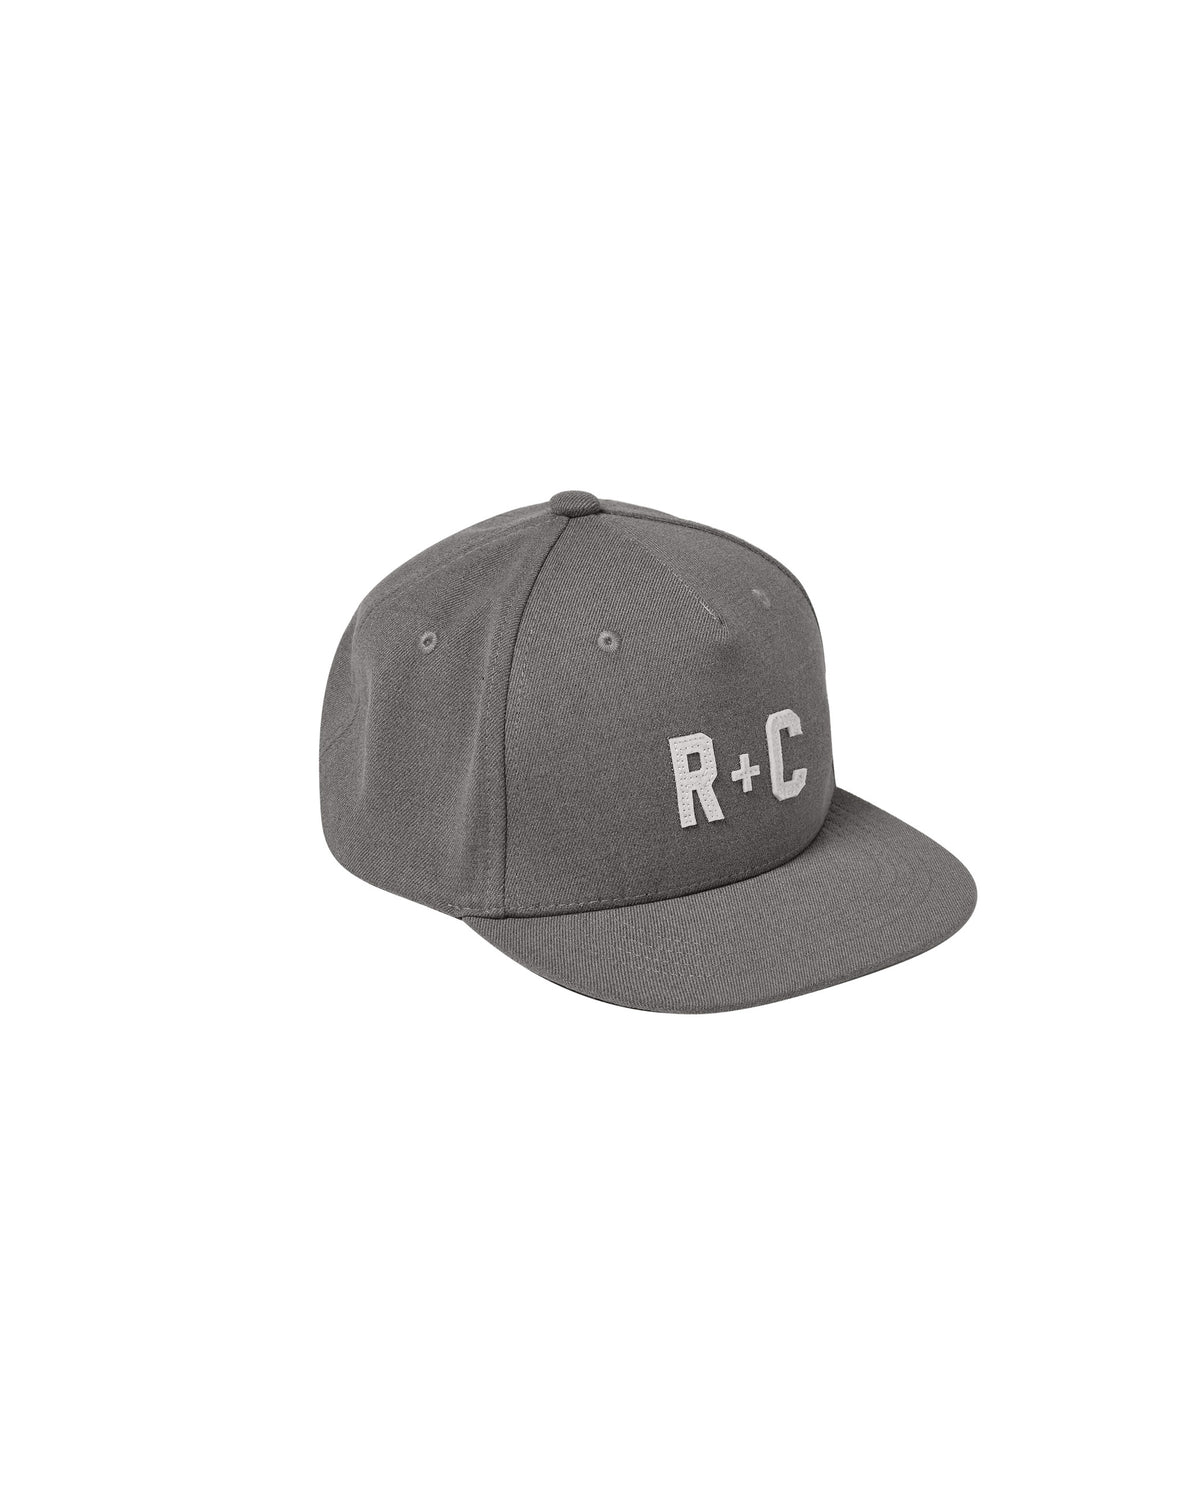 Cru Hat || RC